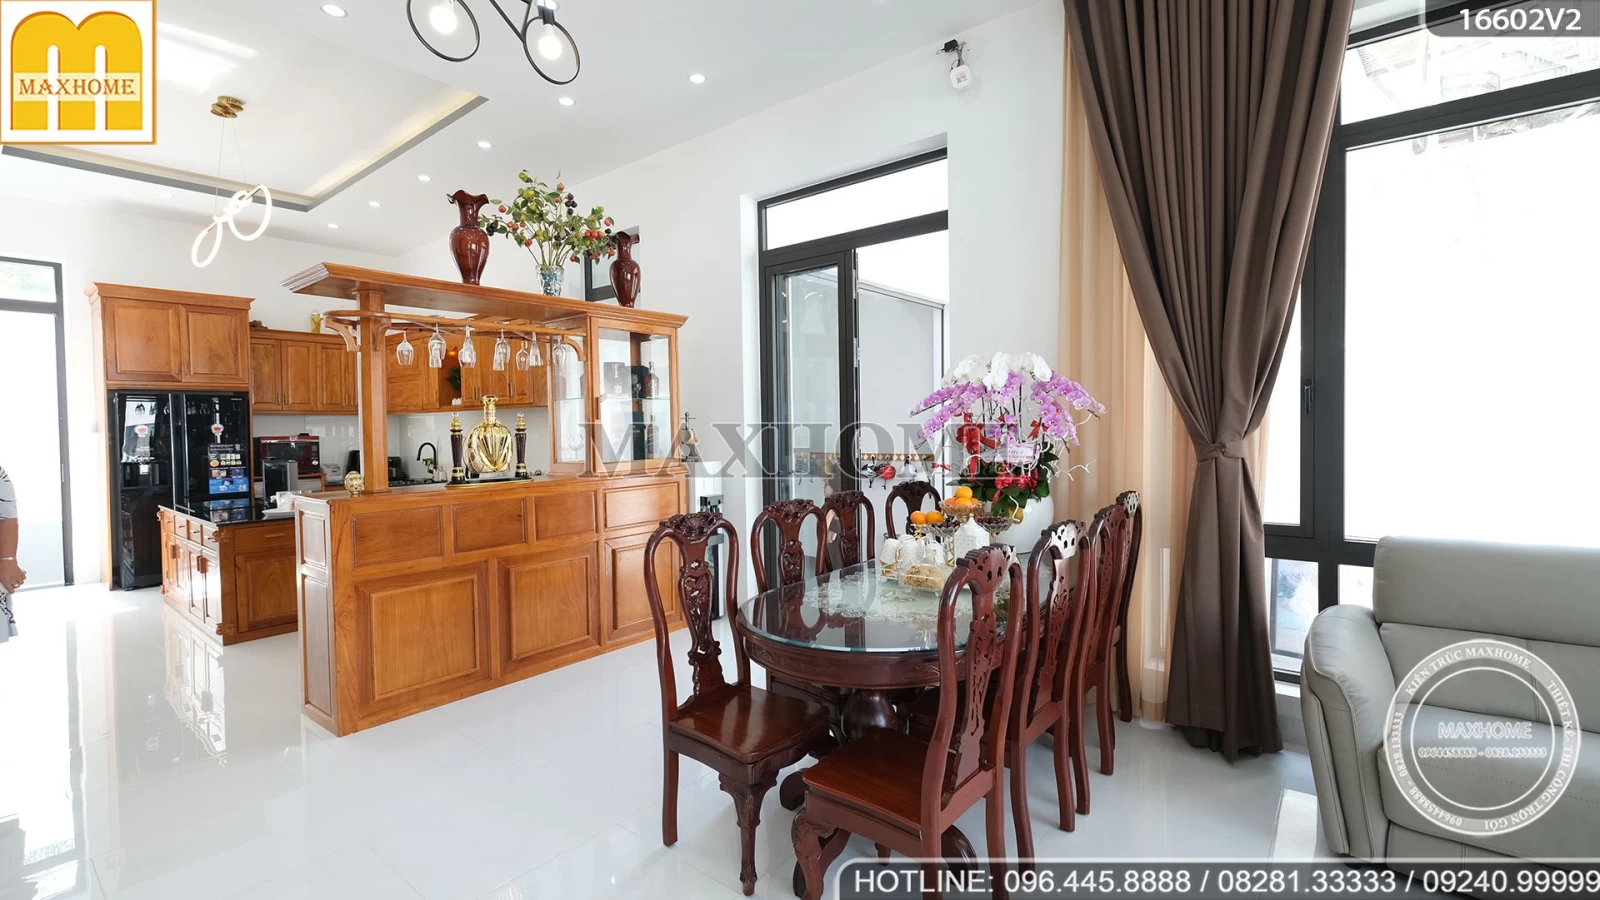 Cùng Maxhome bàn giao mẫu nhà hiện đại 2 tầng tại Đồng Nai | MH01832